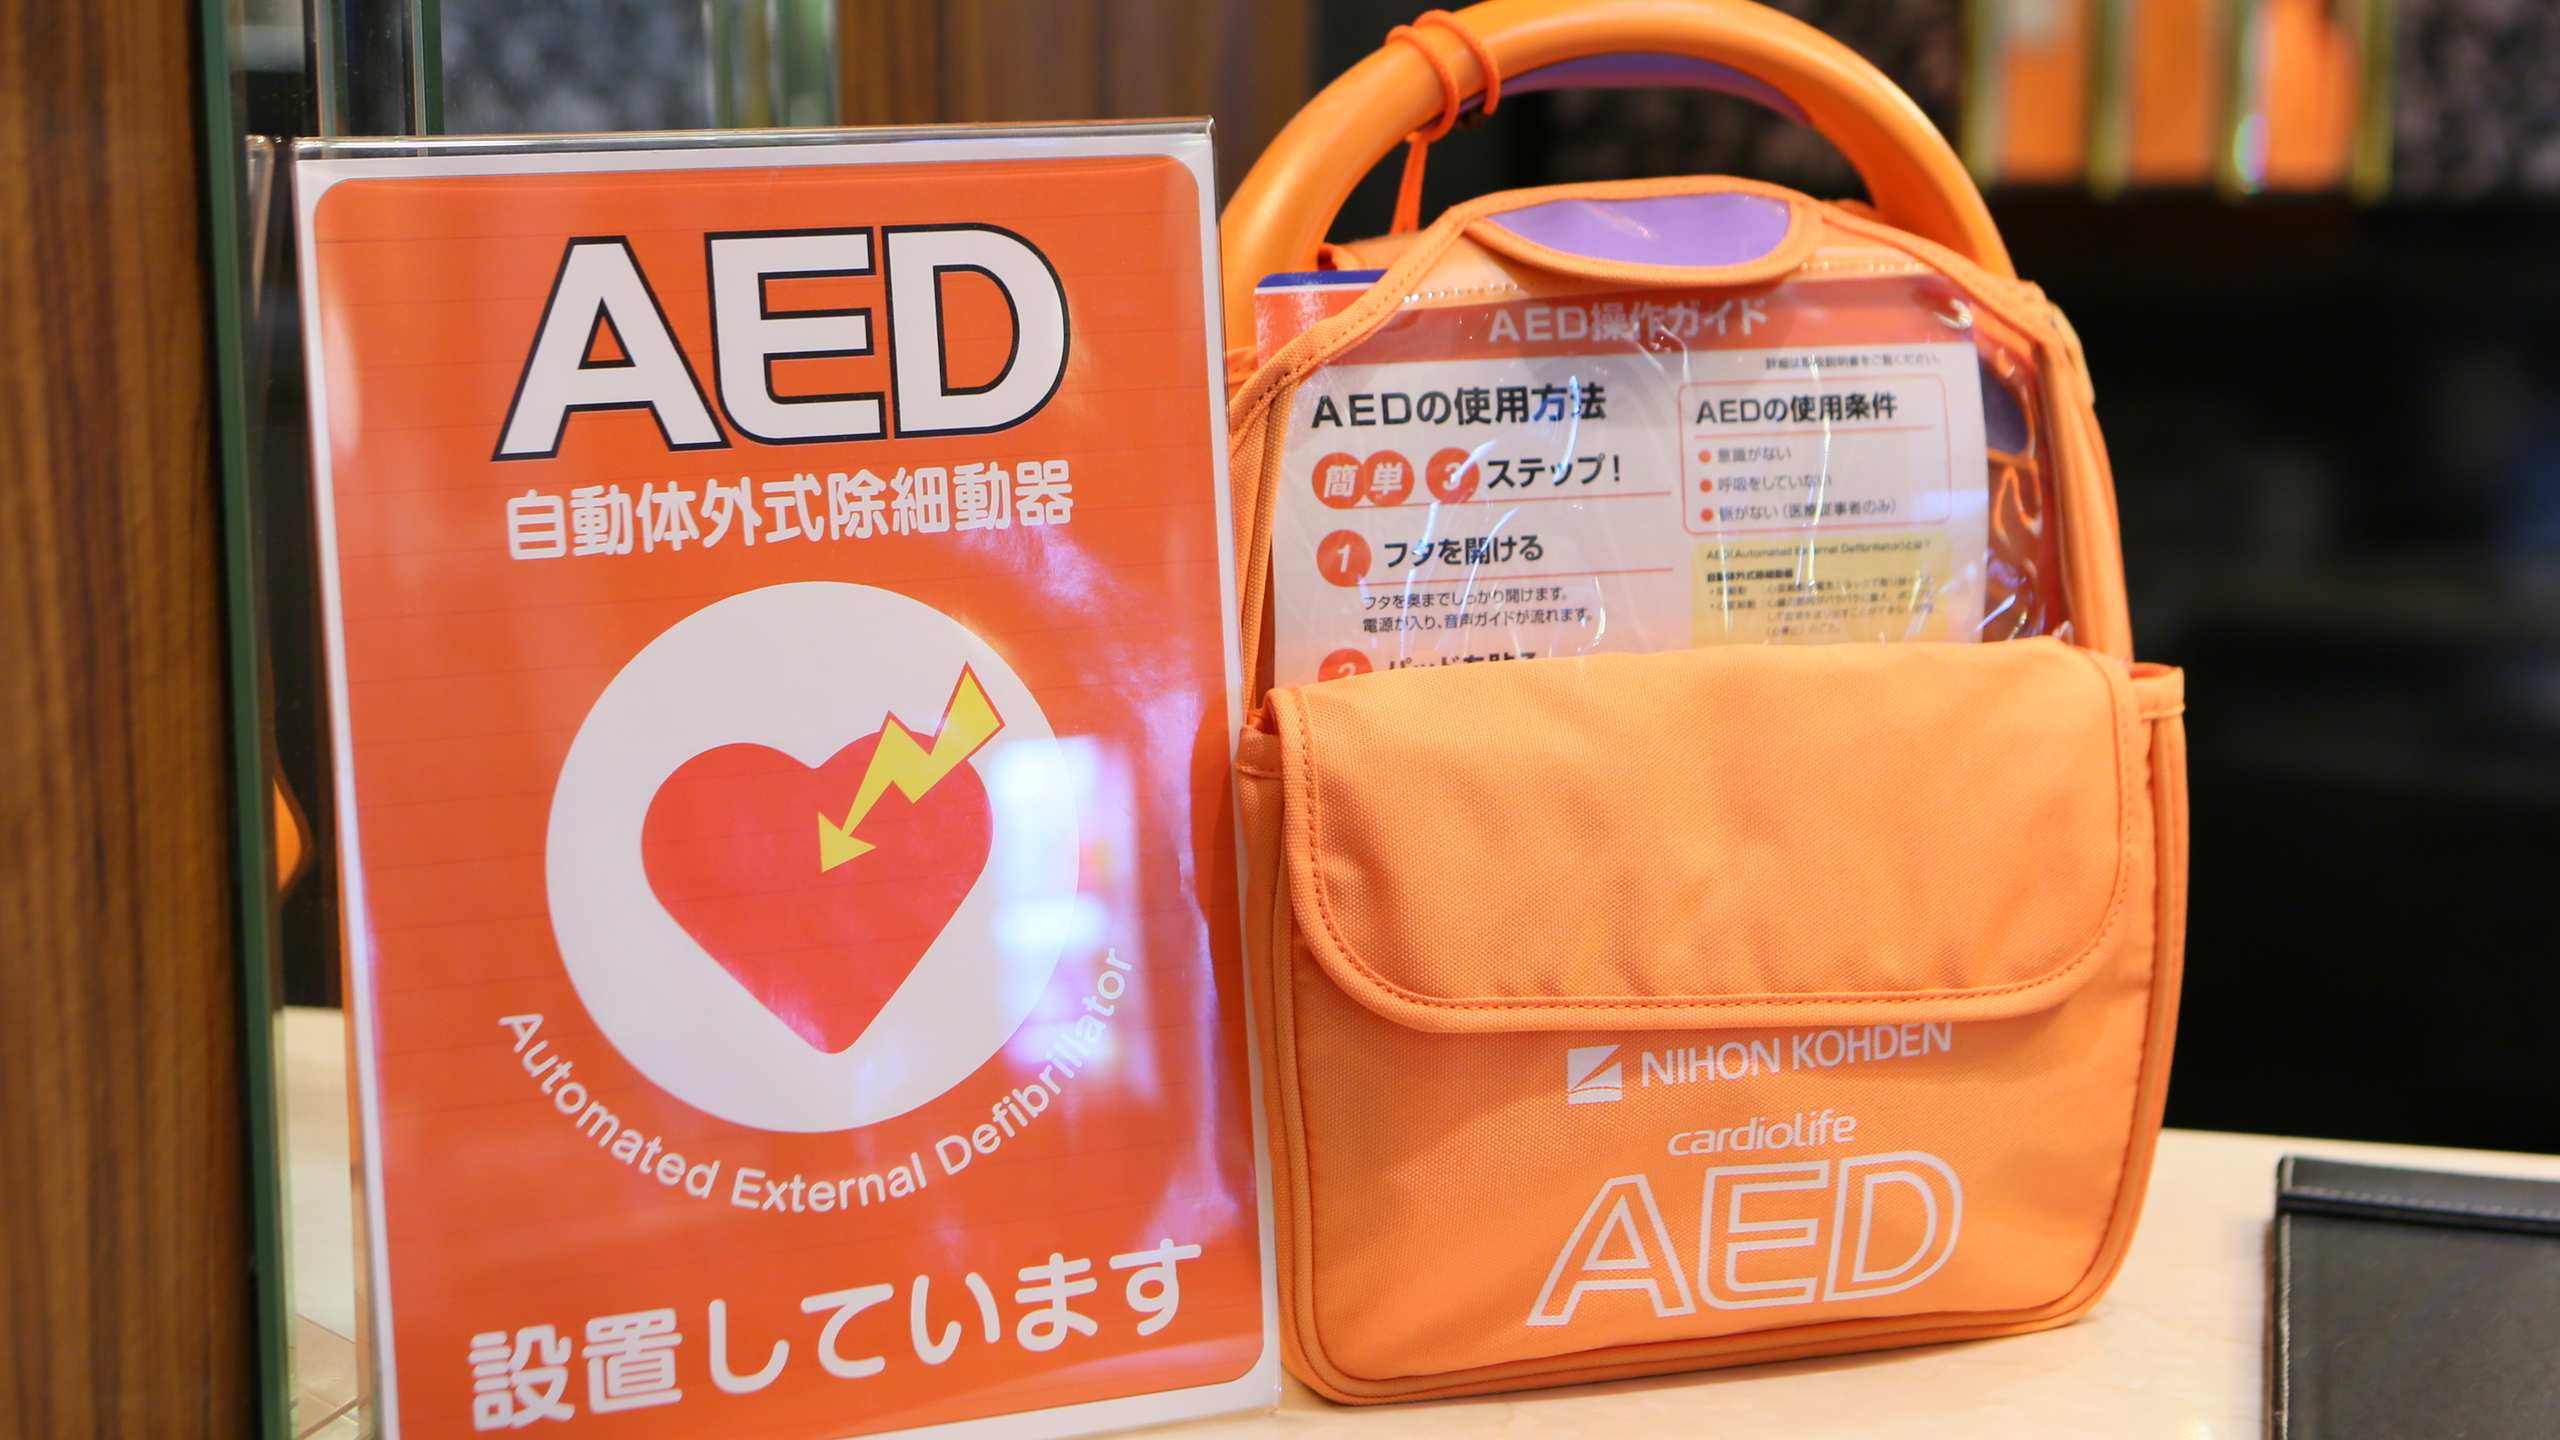 お客様や近隣の方々が安心してお過ごしいただけるよう、「AED(自動体外式助細動器)」を設置しておりま